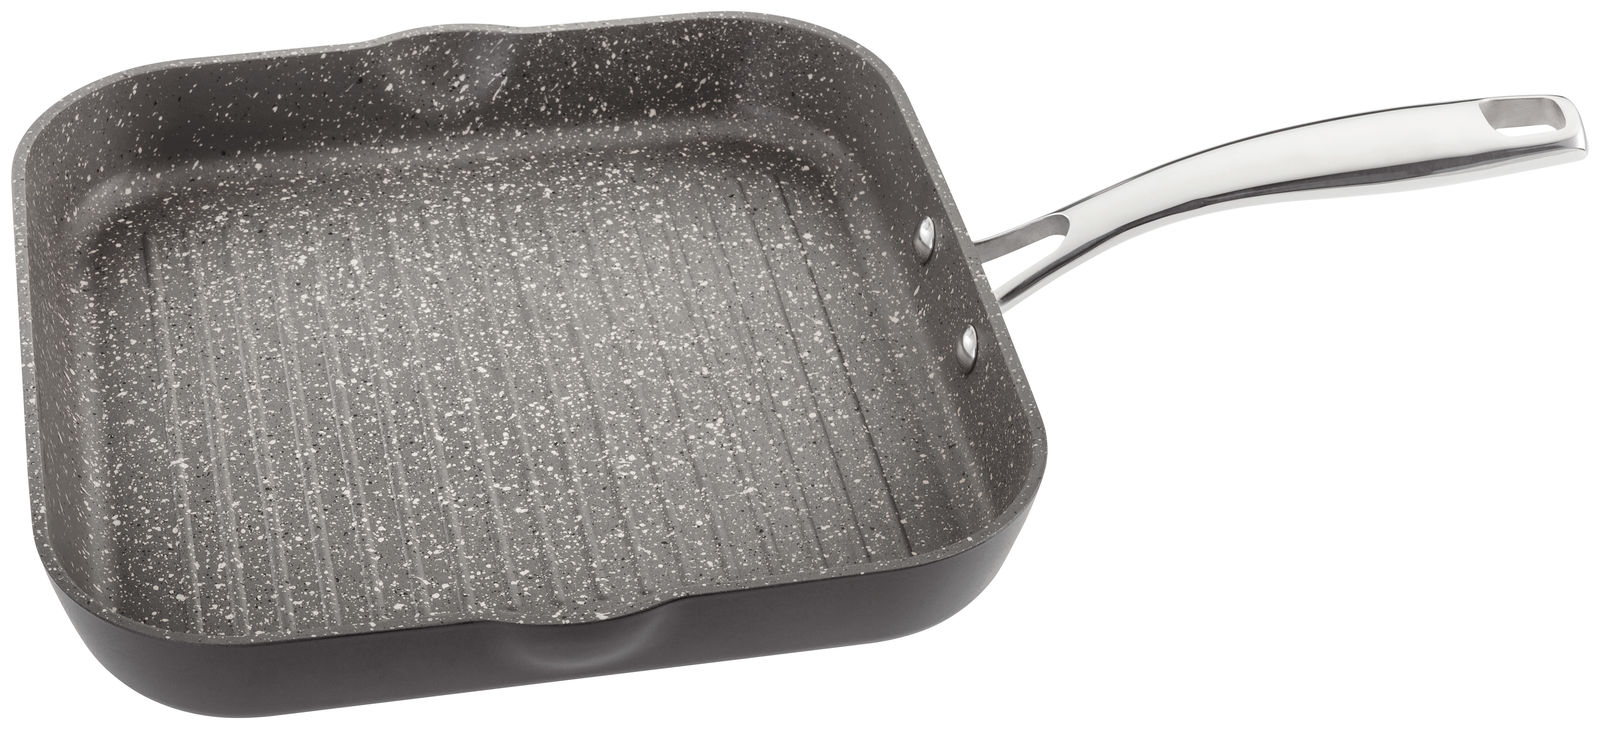 Stellar Rockantium 26cm Frypan Frying pan Non Stick Suitable for Aga/Rayburn 